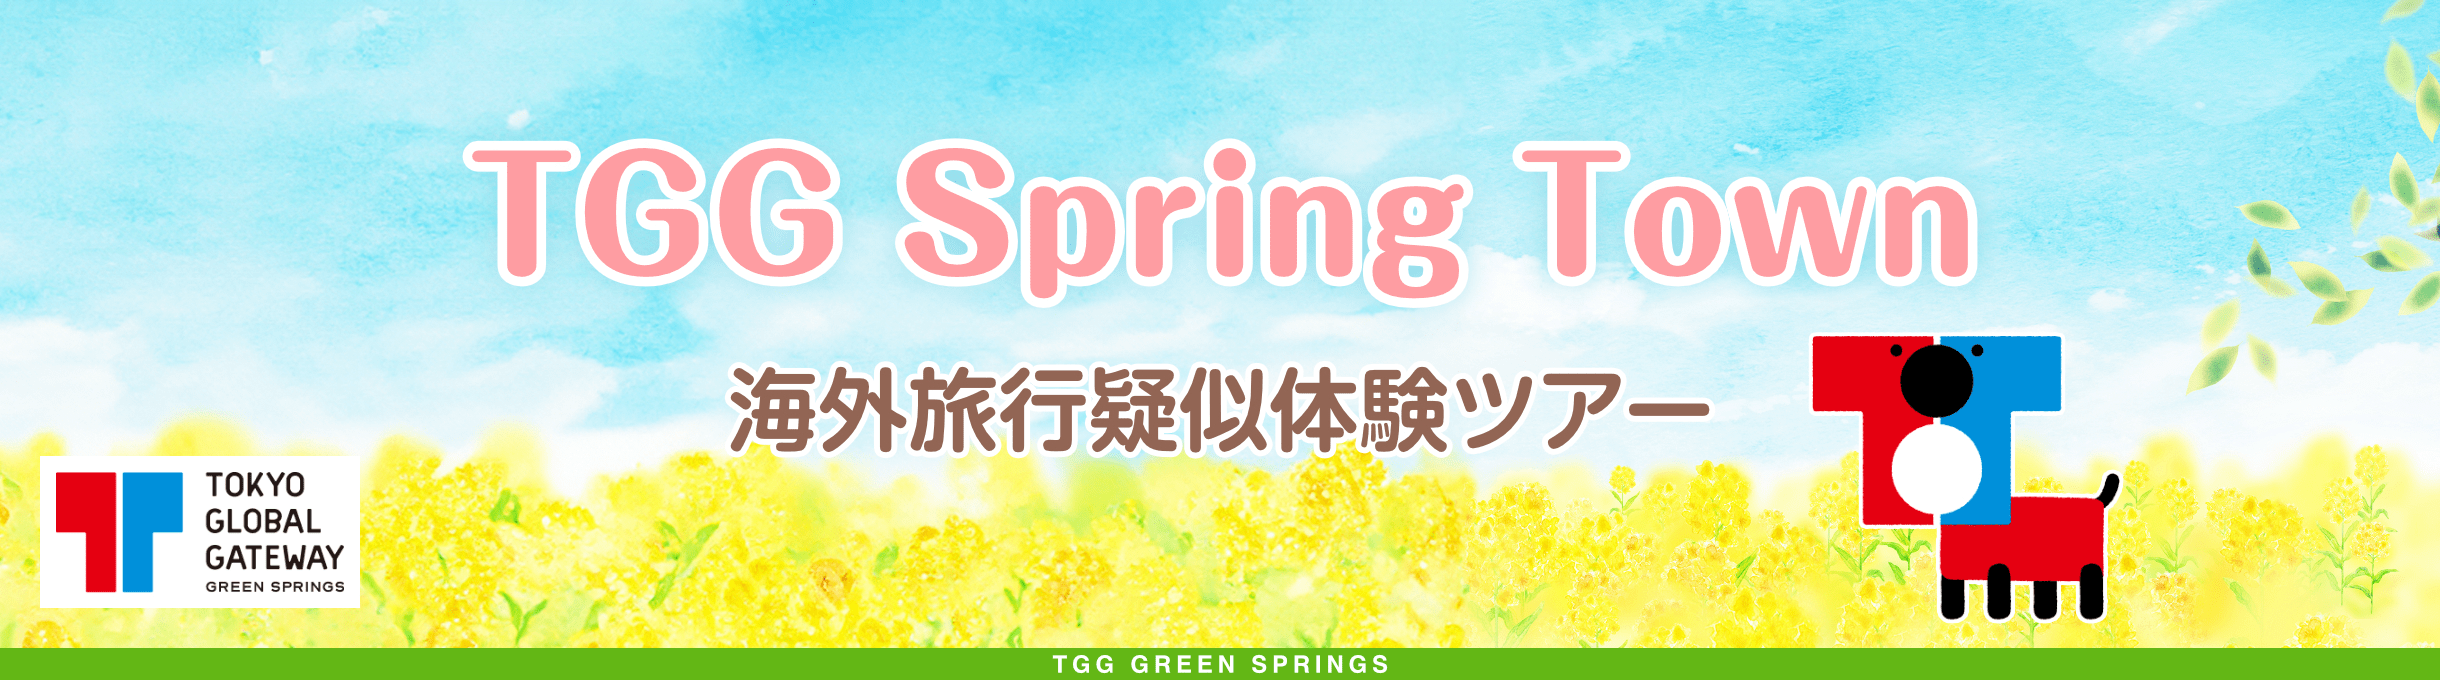 TGG Spring Town 海外旅行疑似体験ツアー TGG GREEN SPRINGS